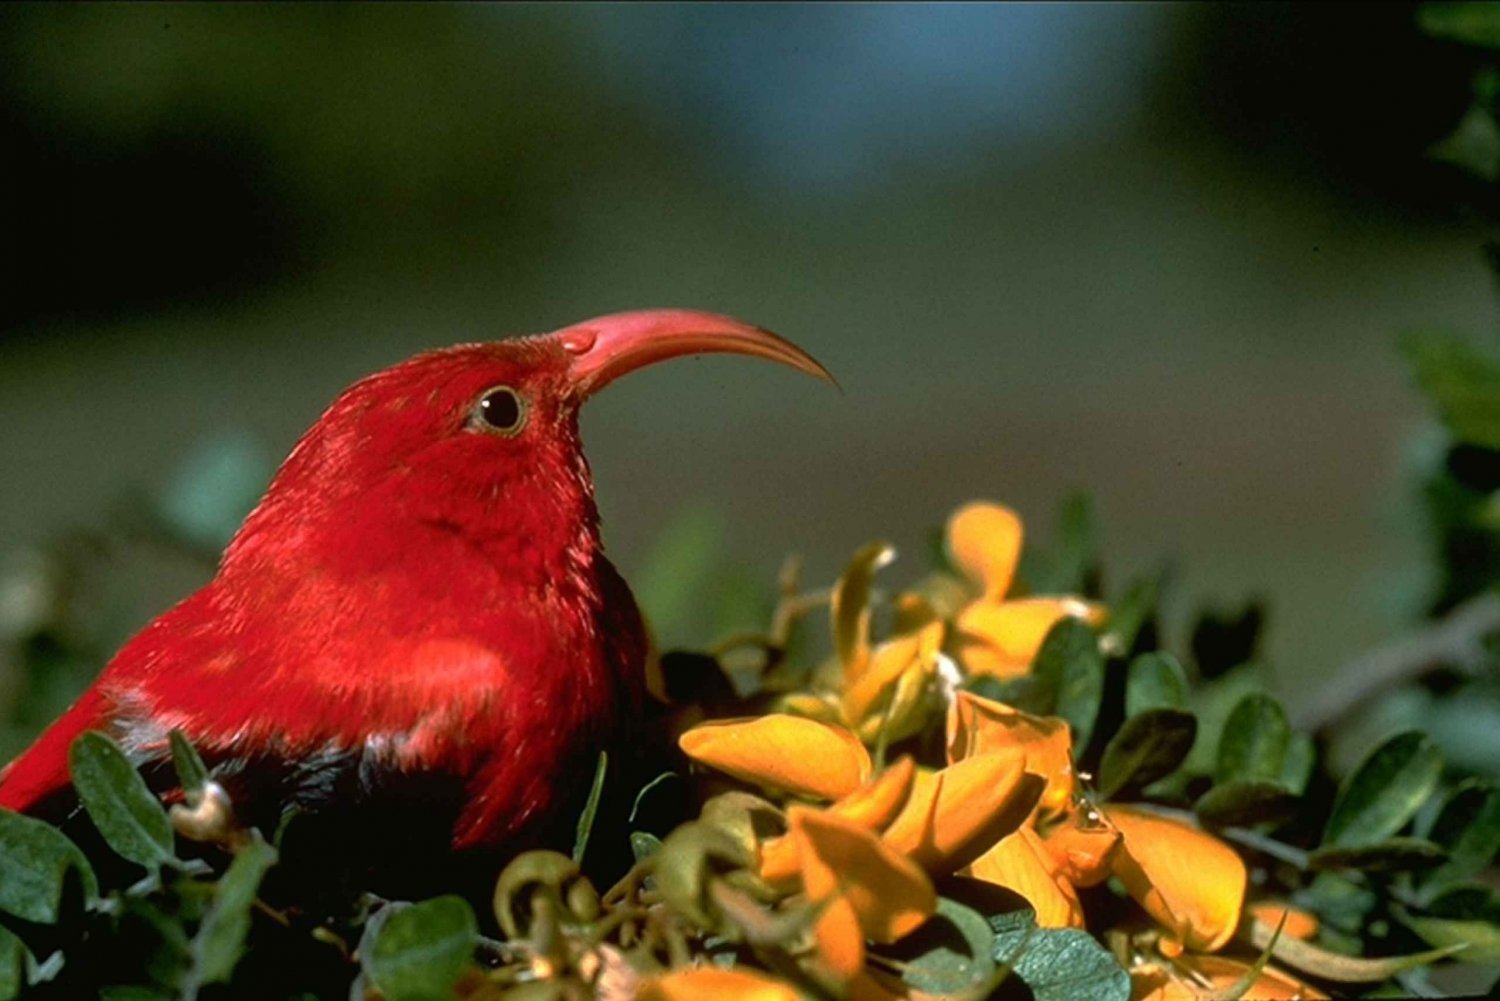 Big Island: Obserwacja rodzimych ptaków i wycieczka piesza